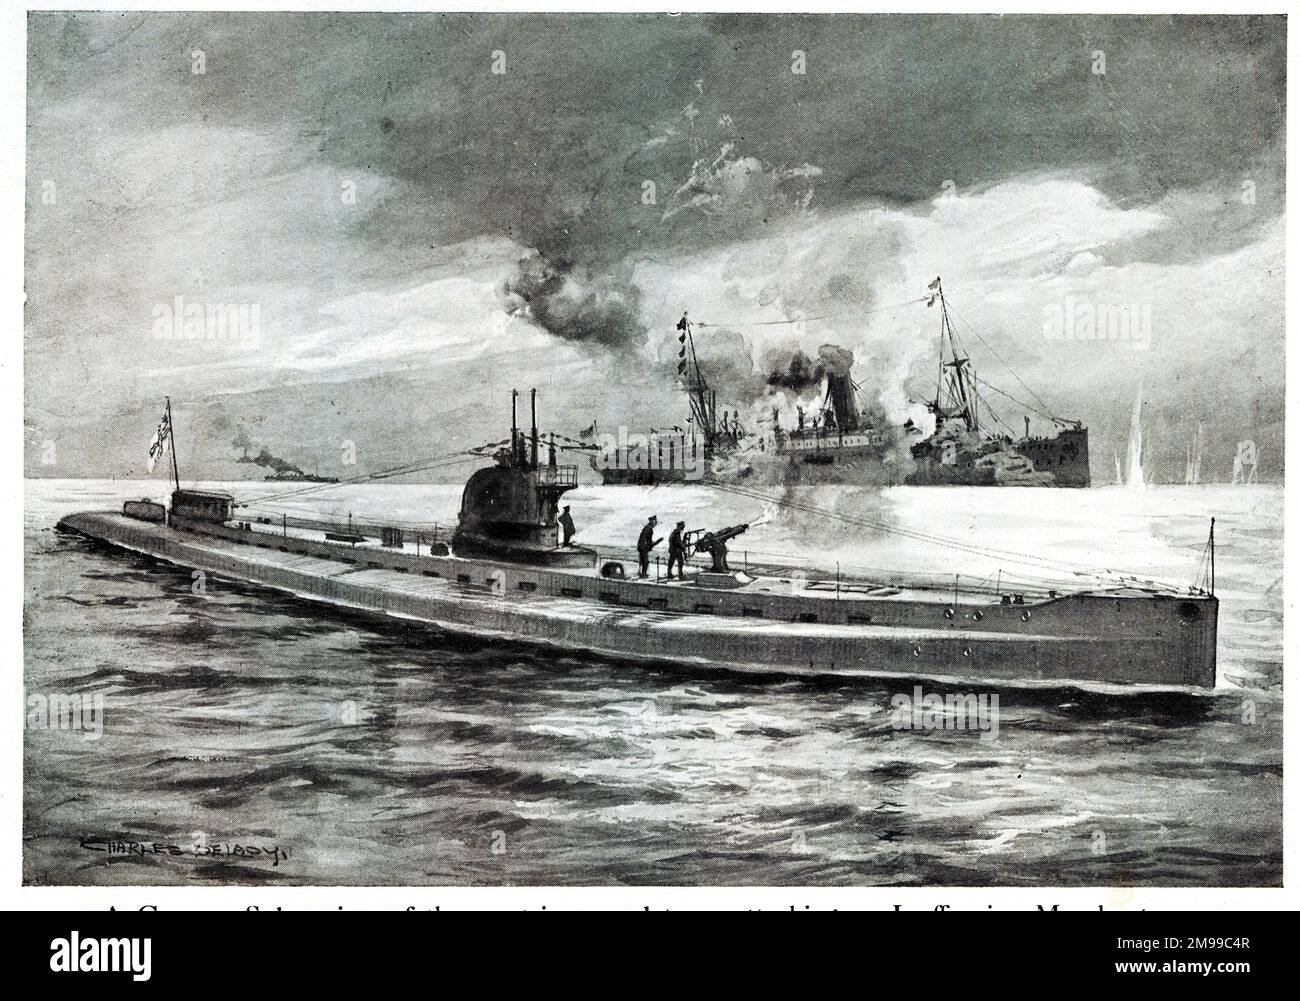 Sous-marin allemand (U-boat) attaquant un navire marchand, première Guerre mondiale. Banque D'Images